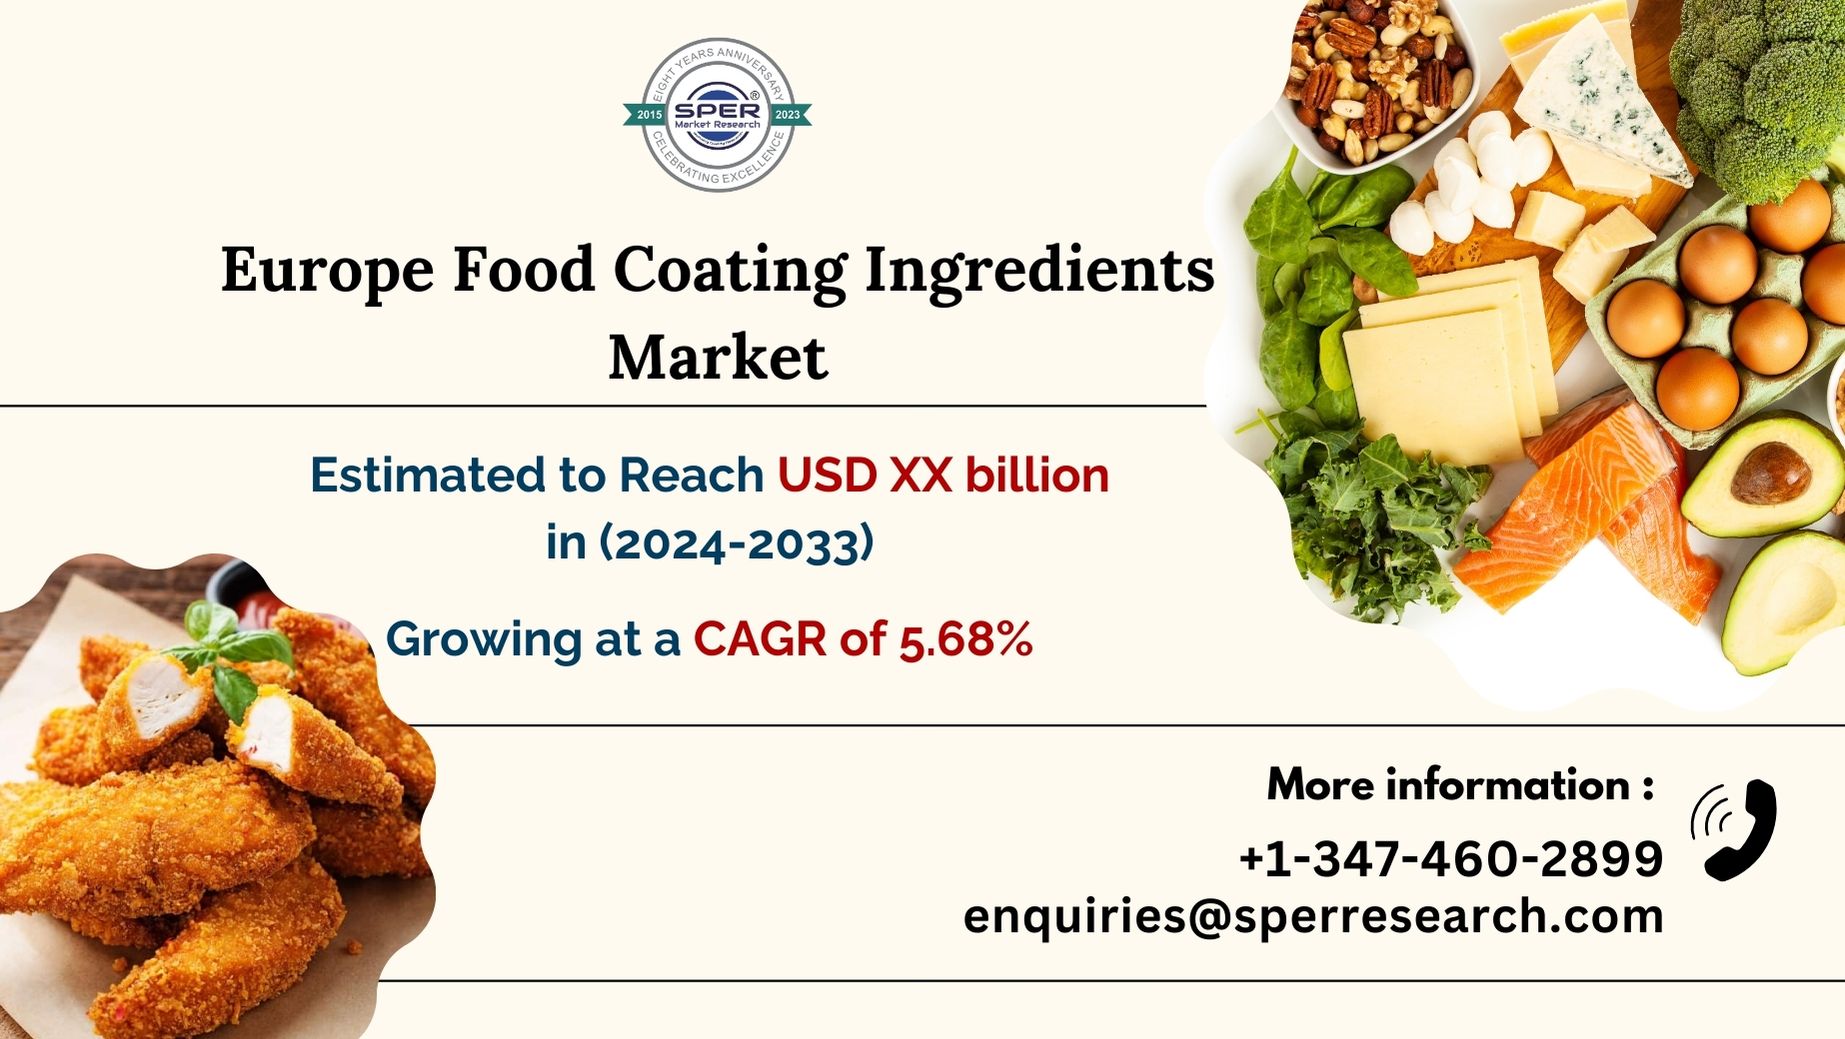 Europe Food Coating Ingredients Market